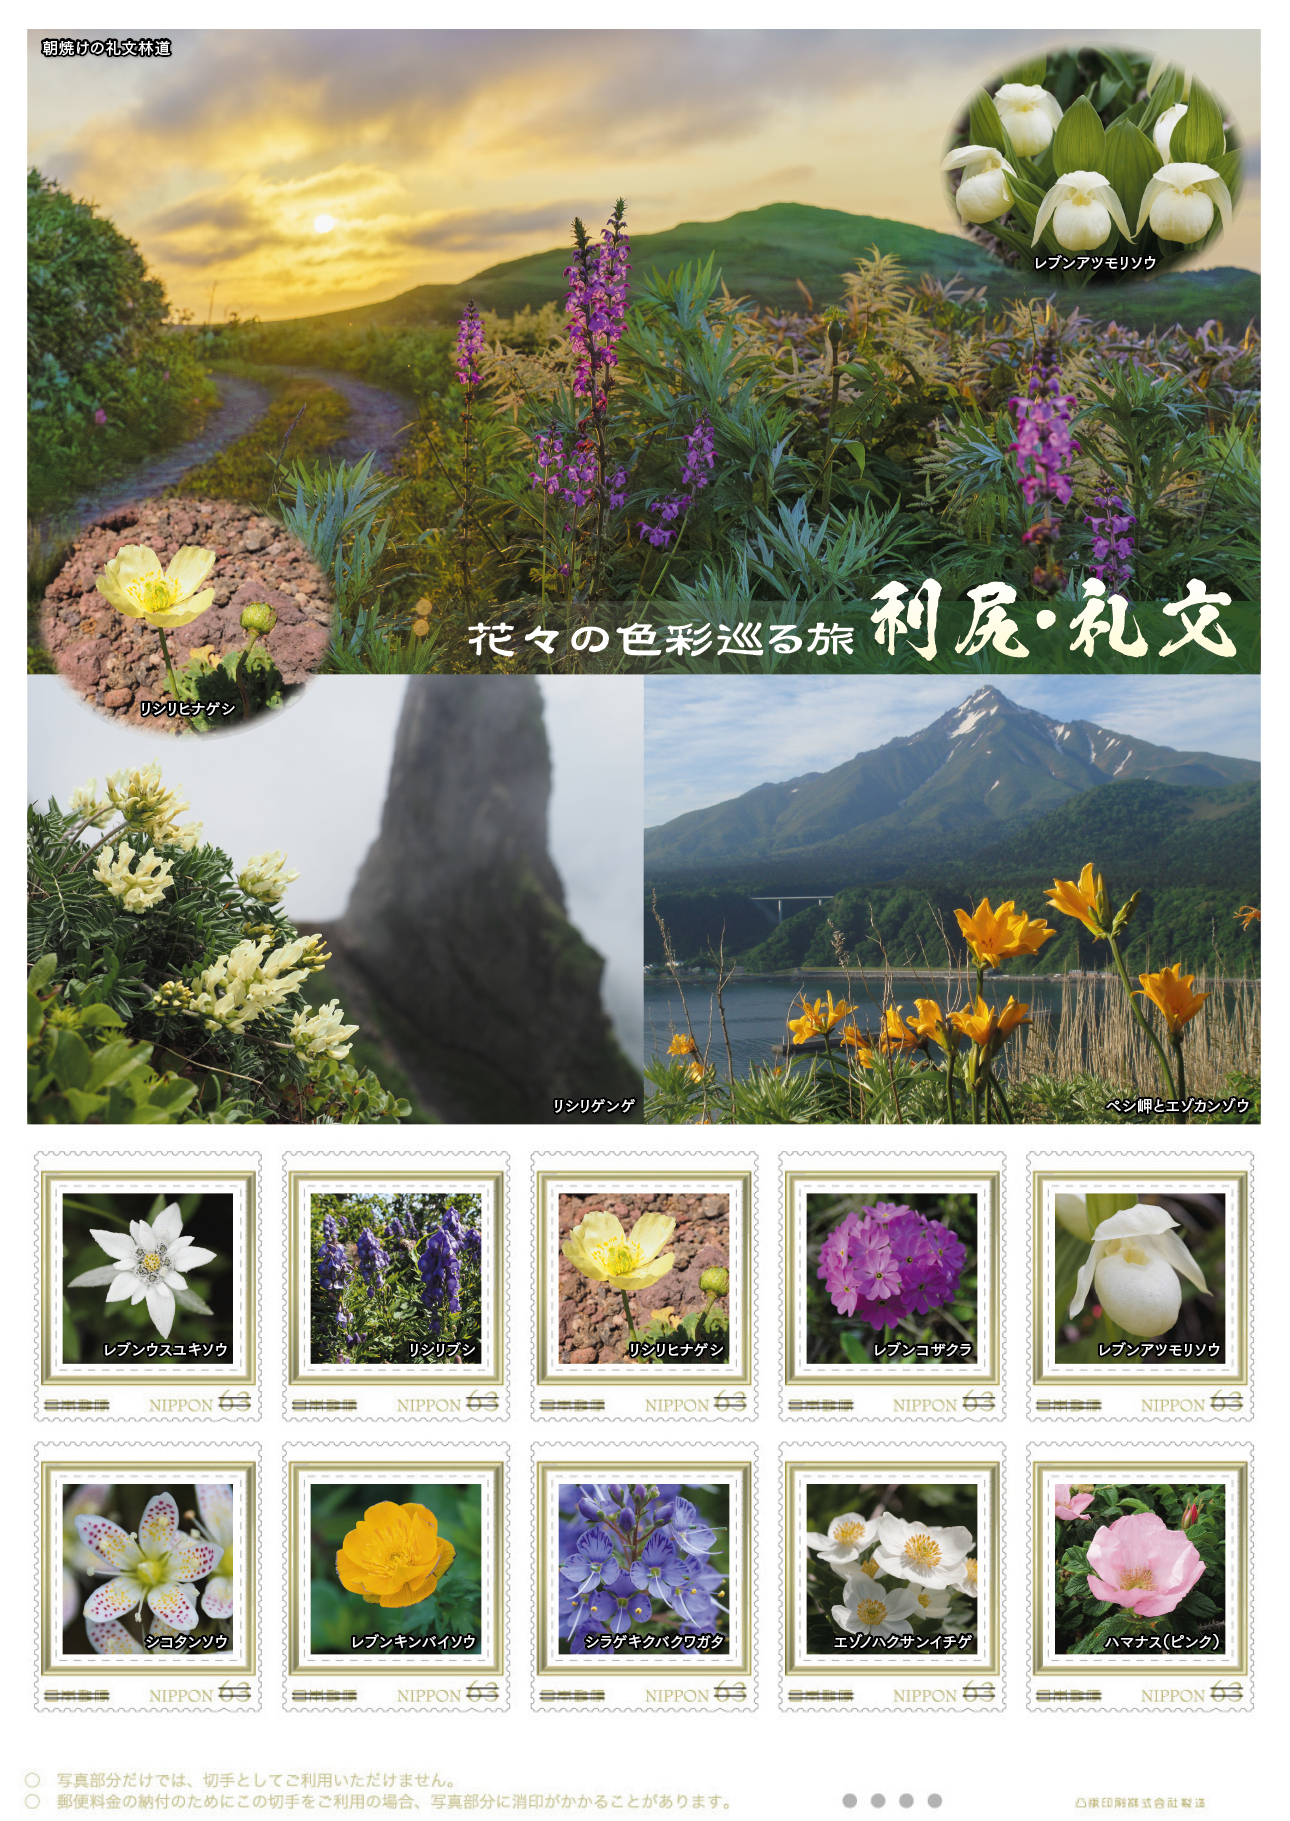 オリジナル フレーム切手「花々の色彩巡る旅　利尻・礼文」の販売開始